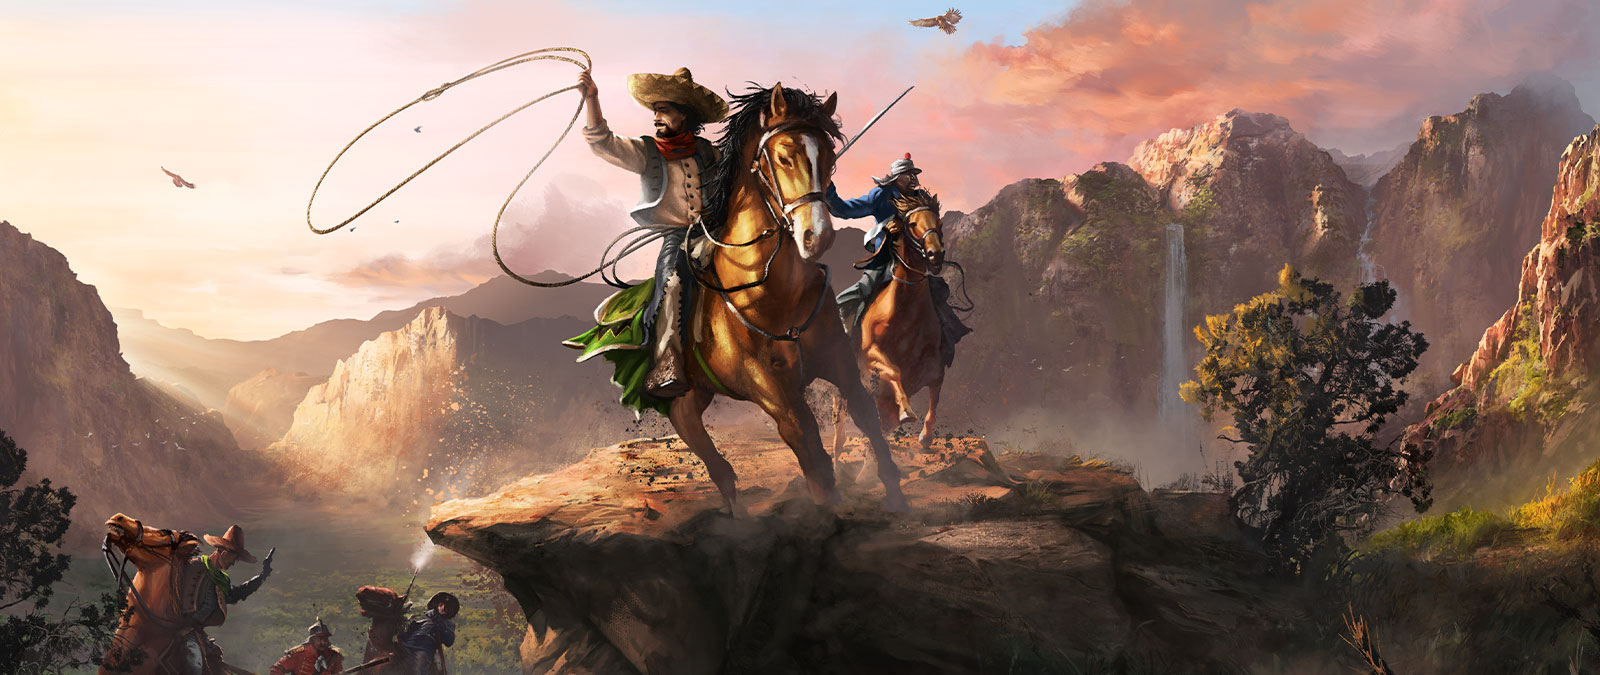 Deux personnages, portant un lasso et une épée, sont assis sur leurs chevaux dans une grande vallée.